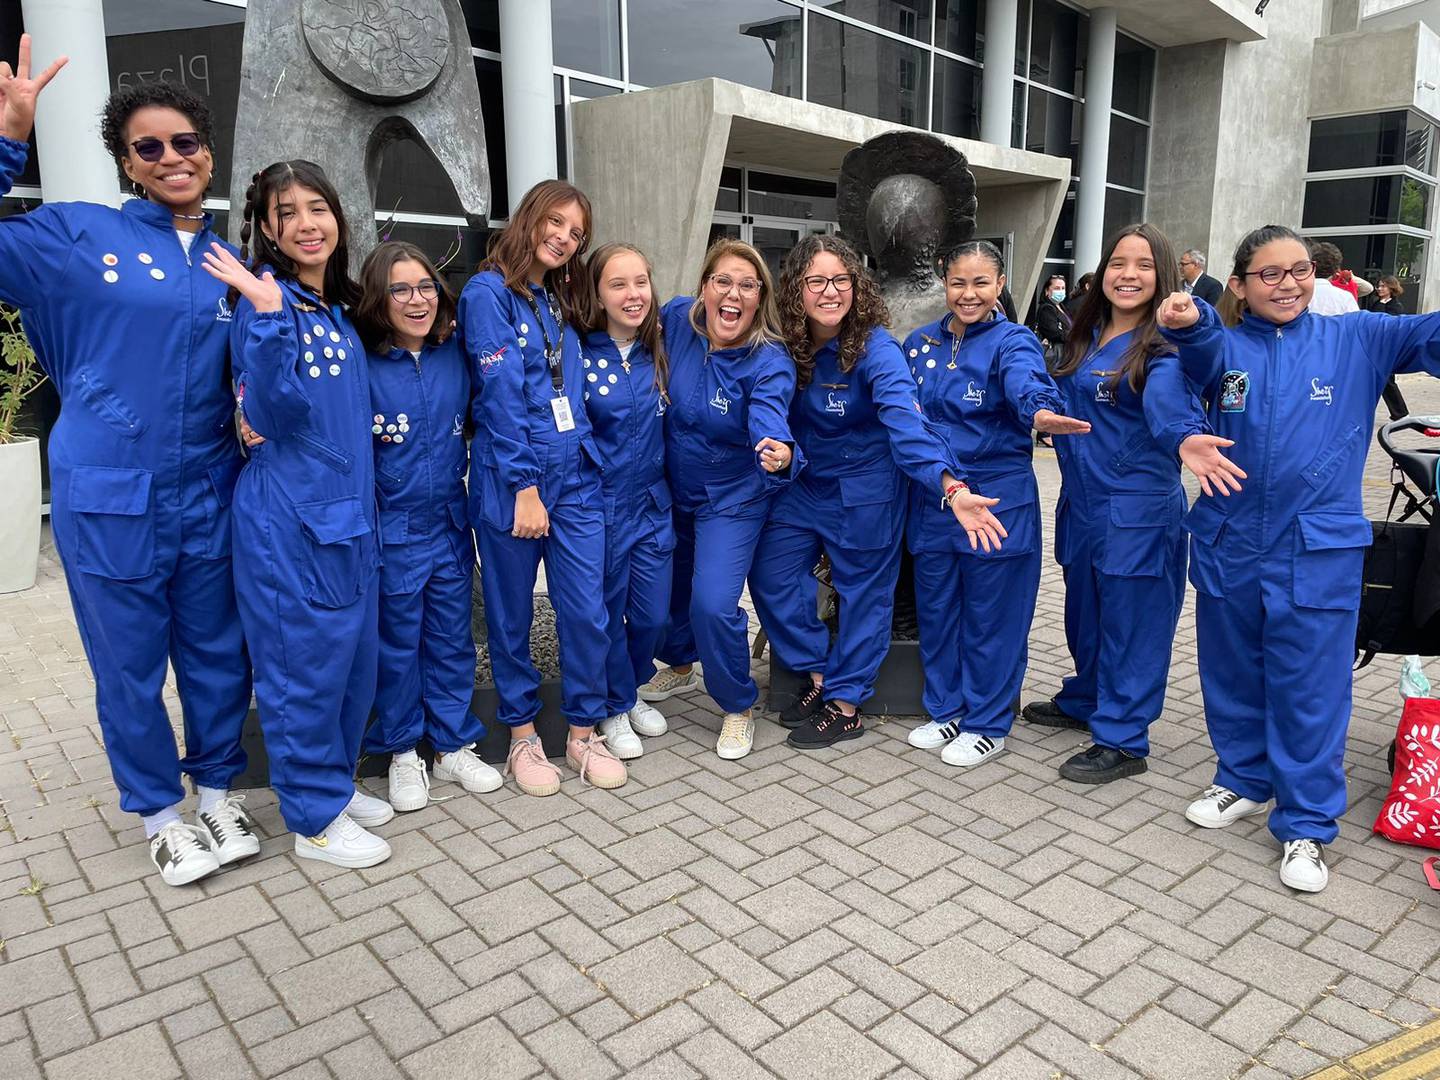 La ingeniera costarricense Sandra Cauffman, que se ha destacado por su trabajo en la NASA, es condecorada por la Universidad de Costa Rica (UCR) con el título de doctora Honoris Causa, este miércoles 8 de marzo. Un grupo de jóvenes que fueron al campamento "Ella es Astronauta" en diciembre del año pasado, estuvieron en la condecoración.